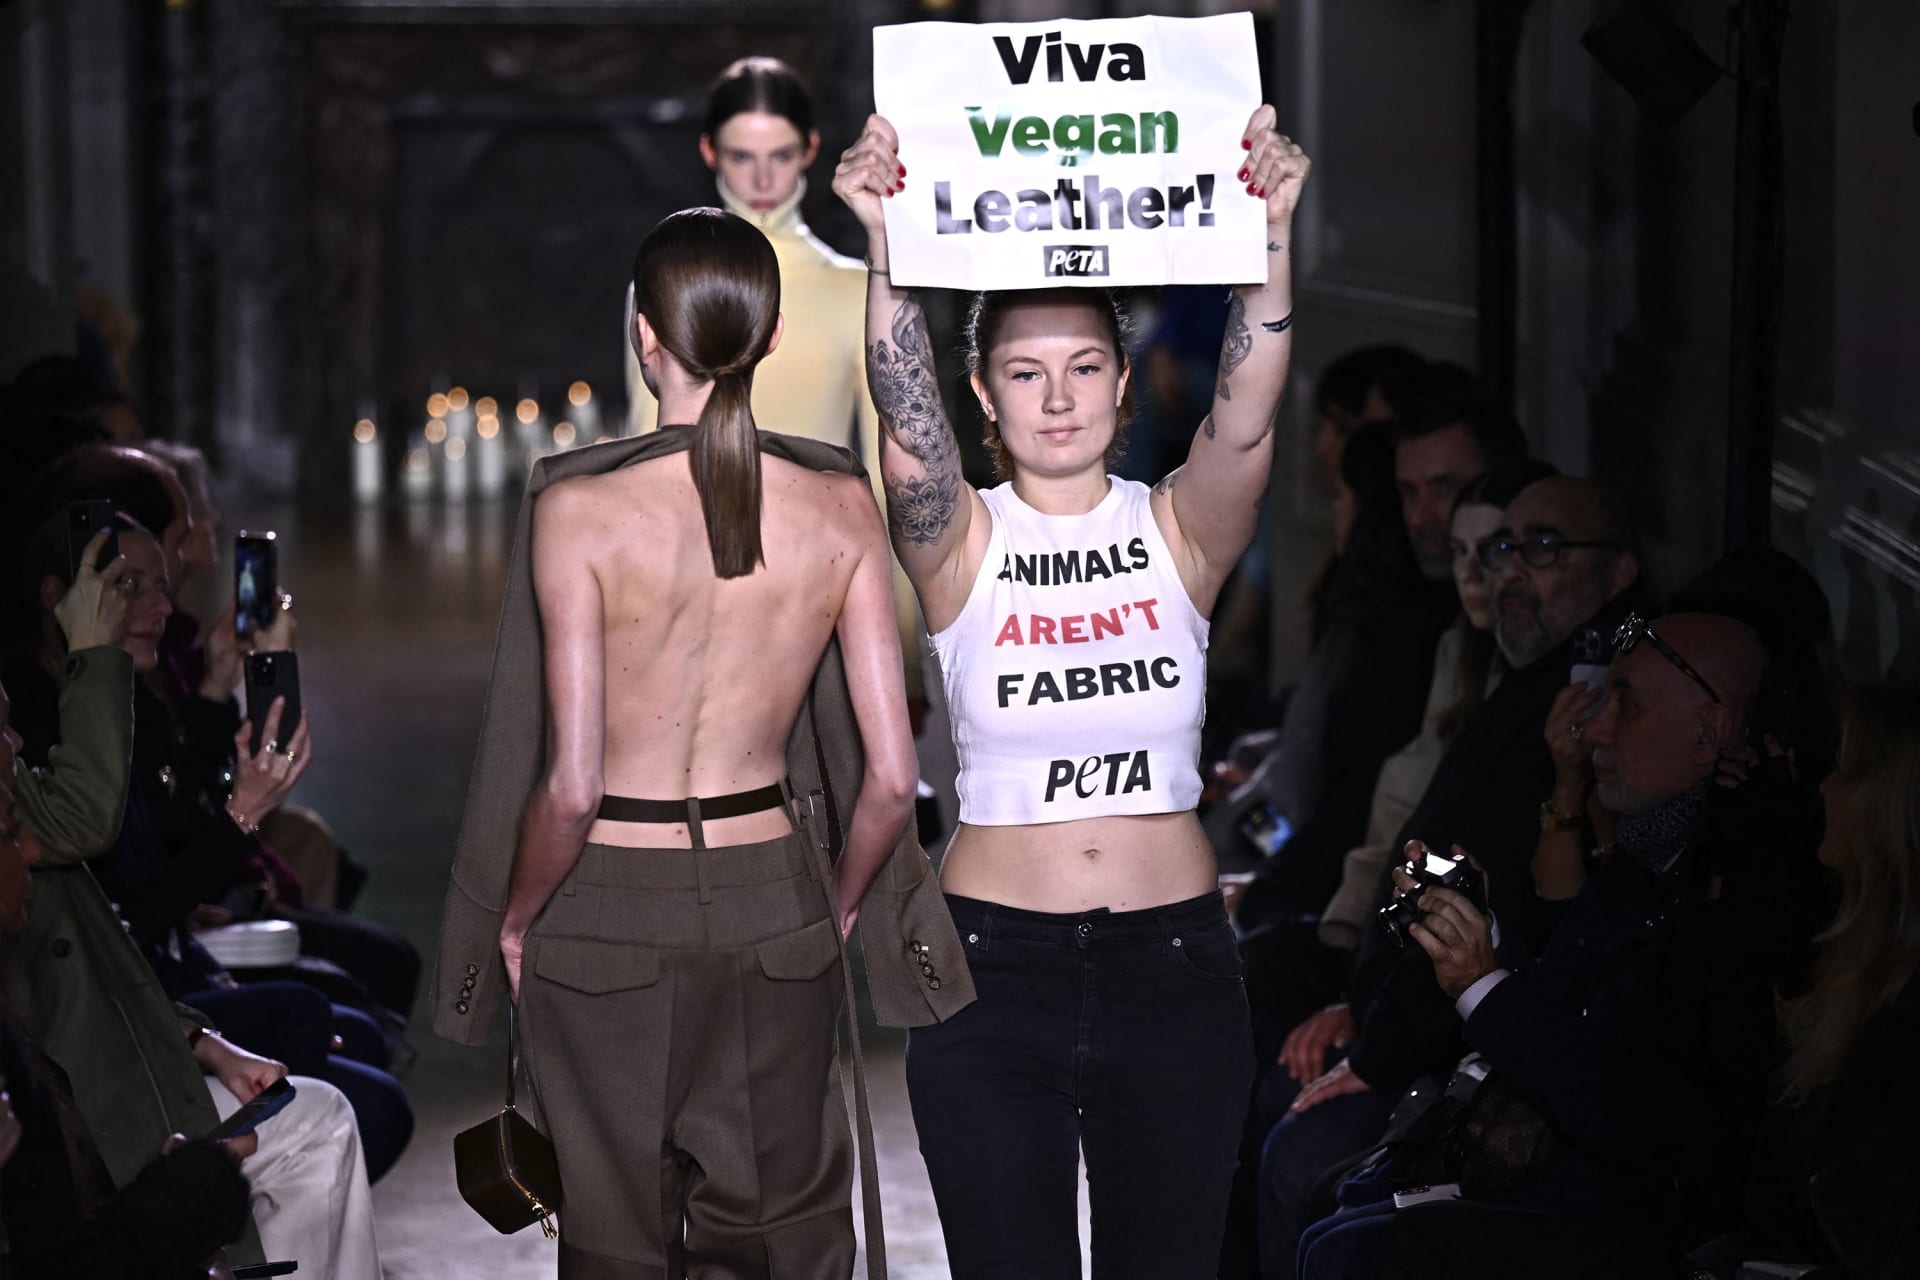 خلال أسبوع الموضة في باريس.. أنصار حقوق الحيوانات يقتحمون عرض أزياء لفيكتوريا بيكهام